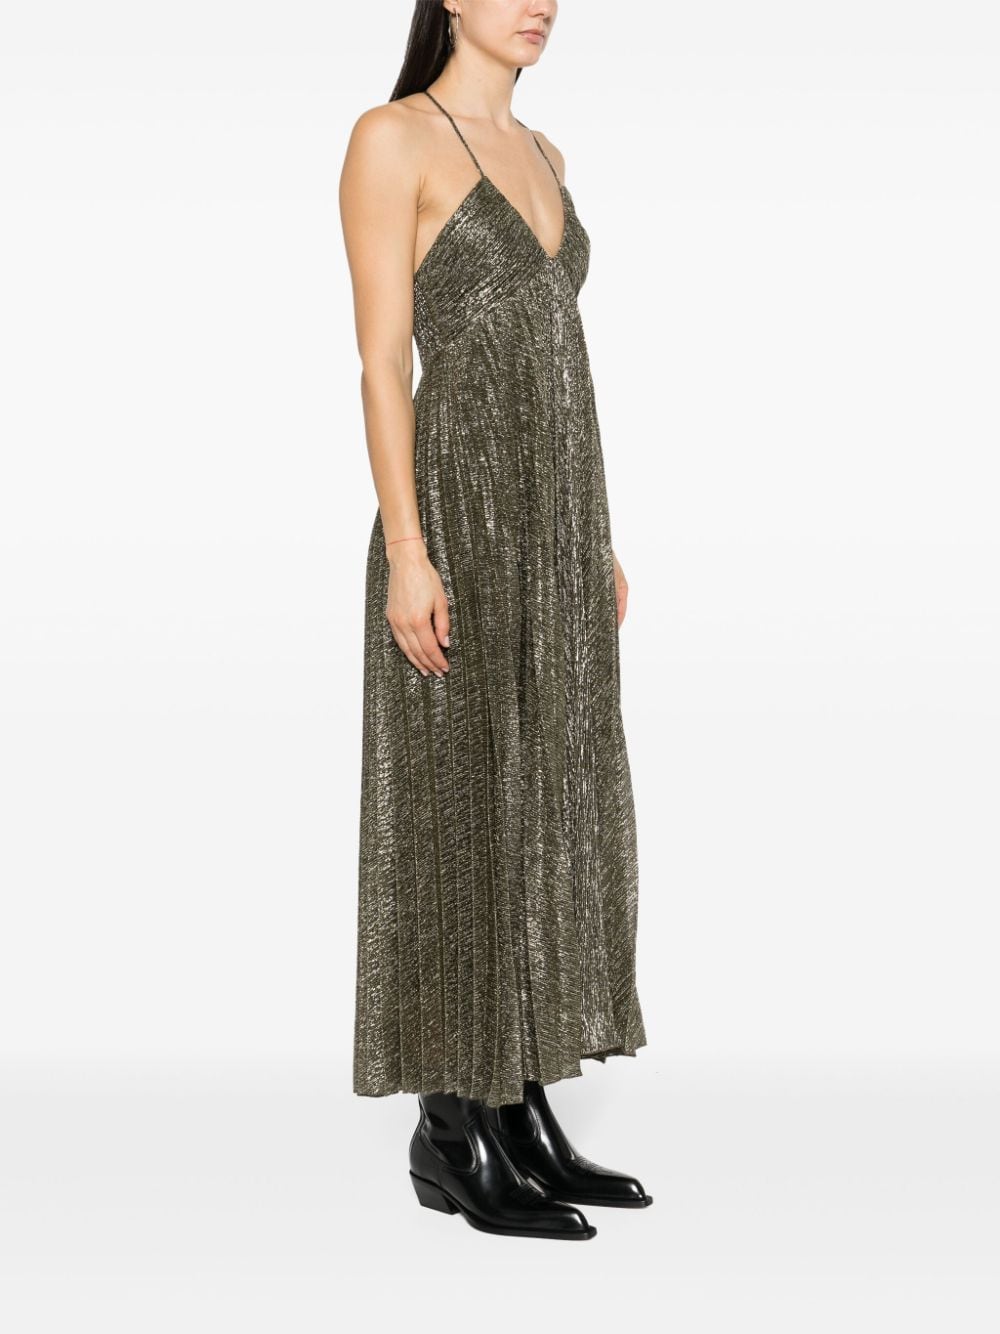 A.L.C. Geplooide jurk met halternek en lamé-effect Goud